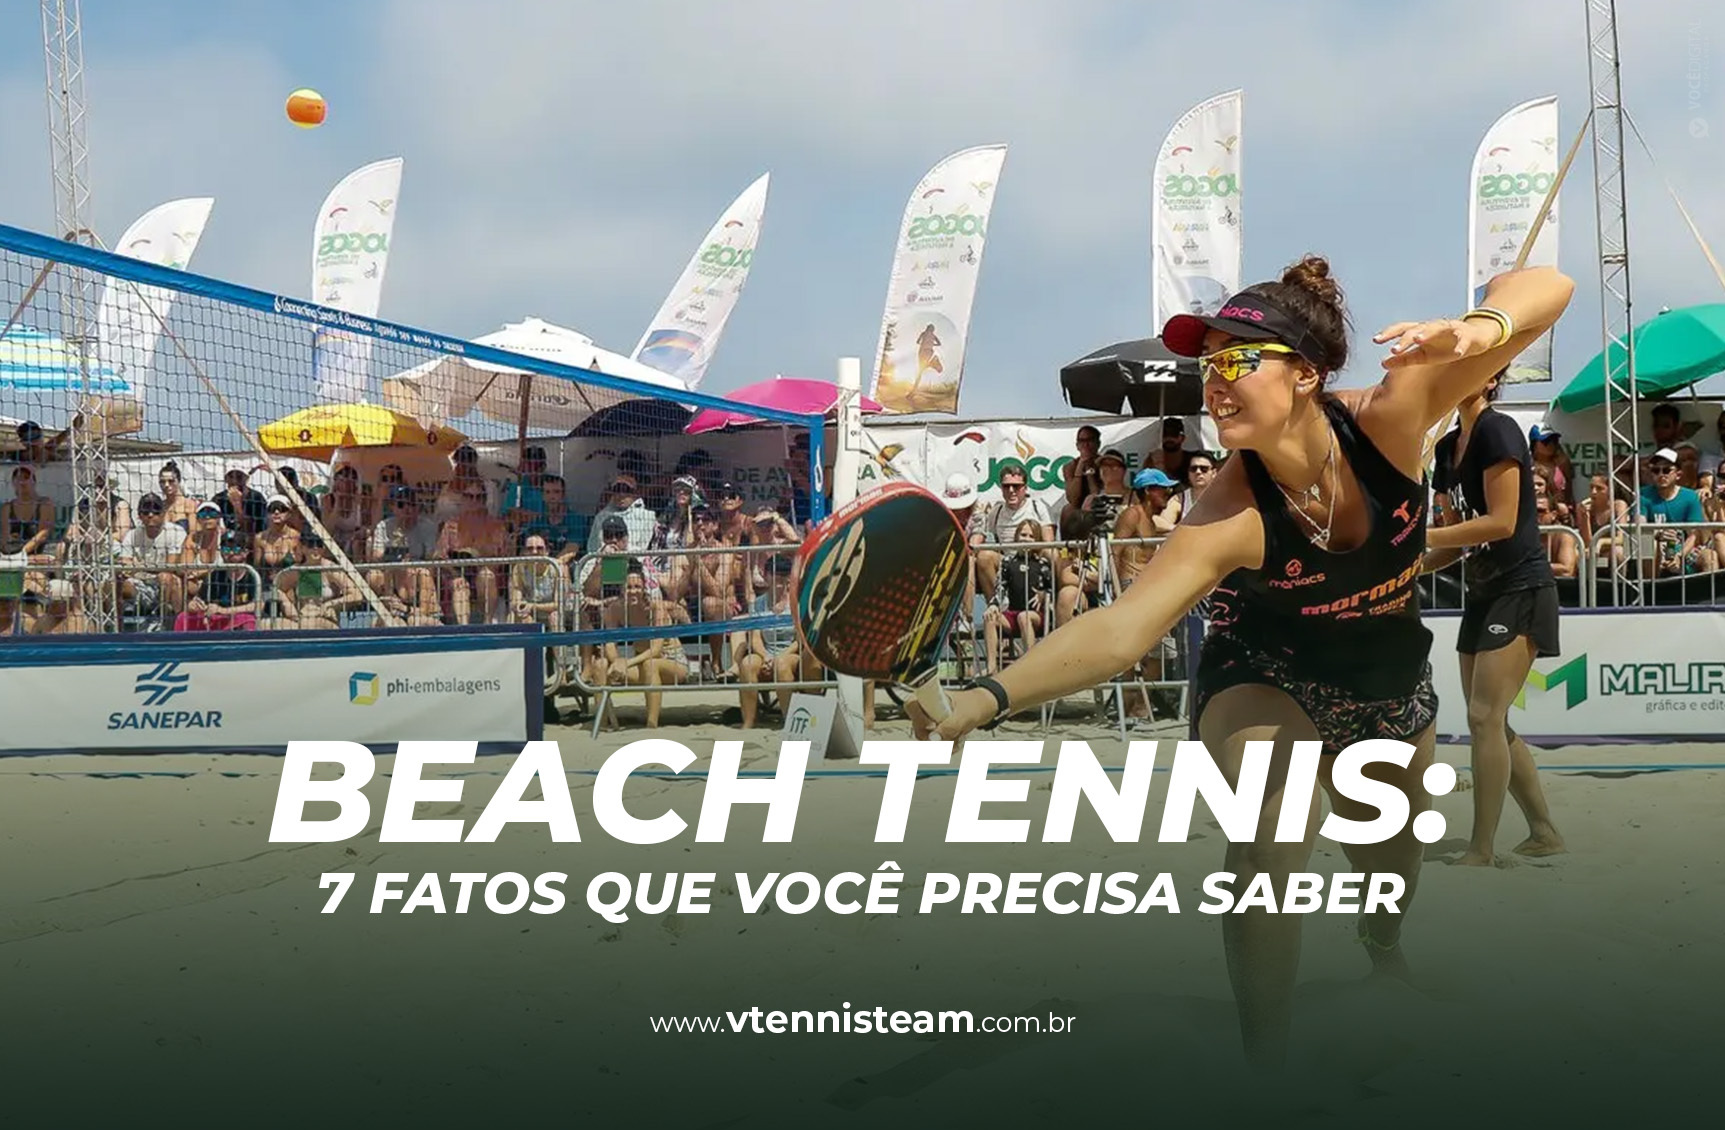 Beach tennis: tudo o que você precisa saber do esporte da vez!